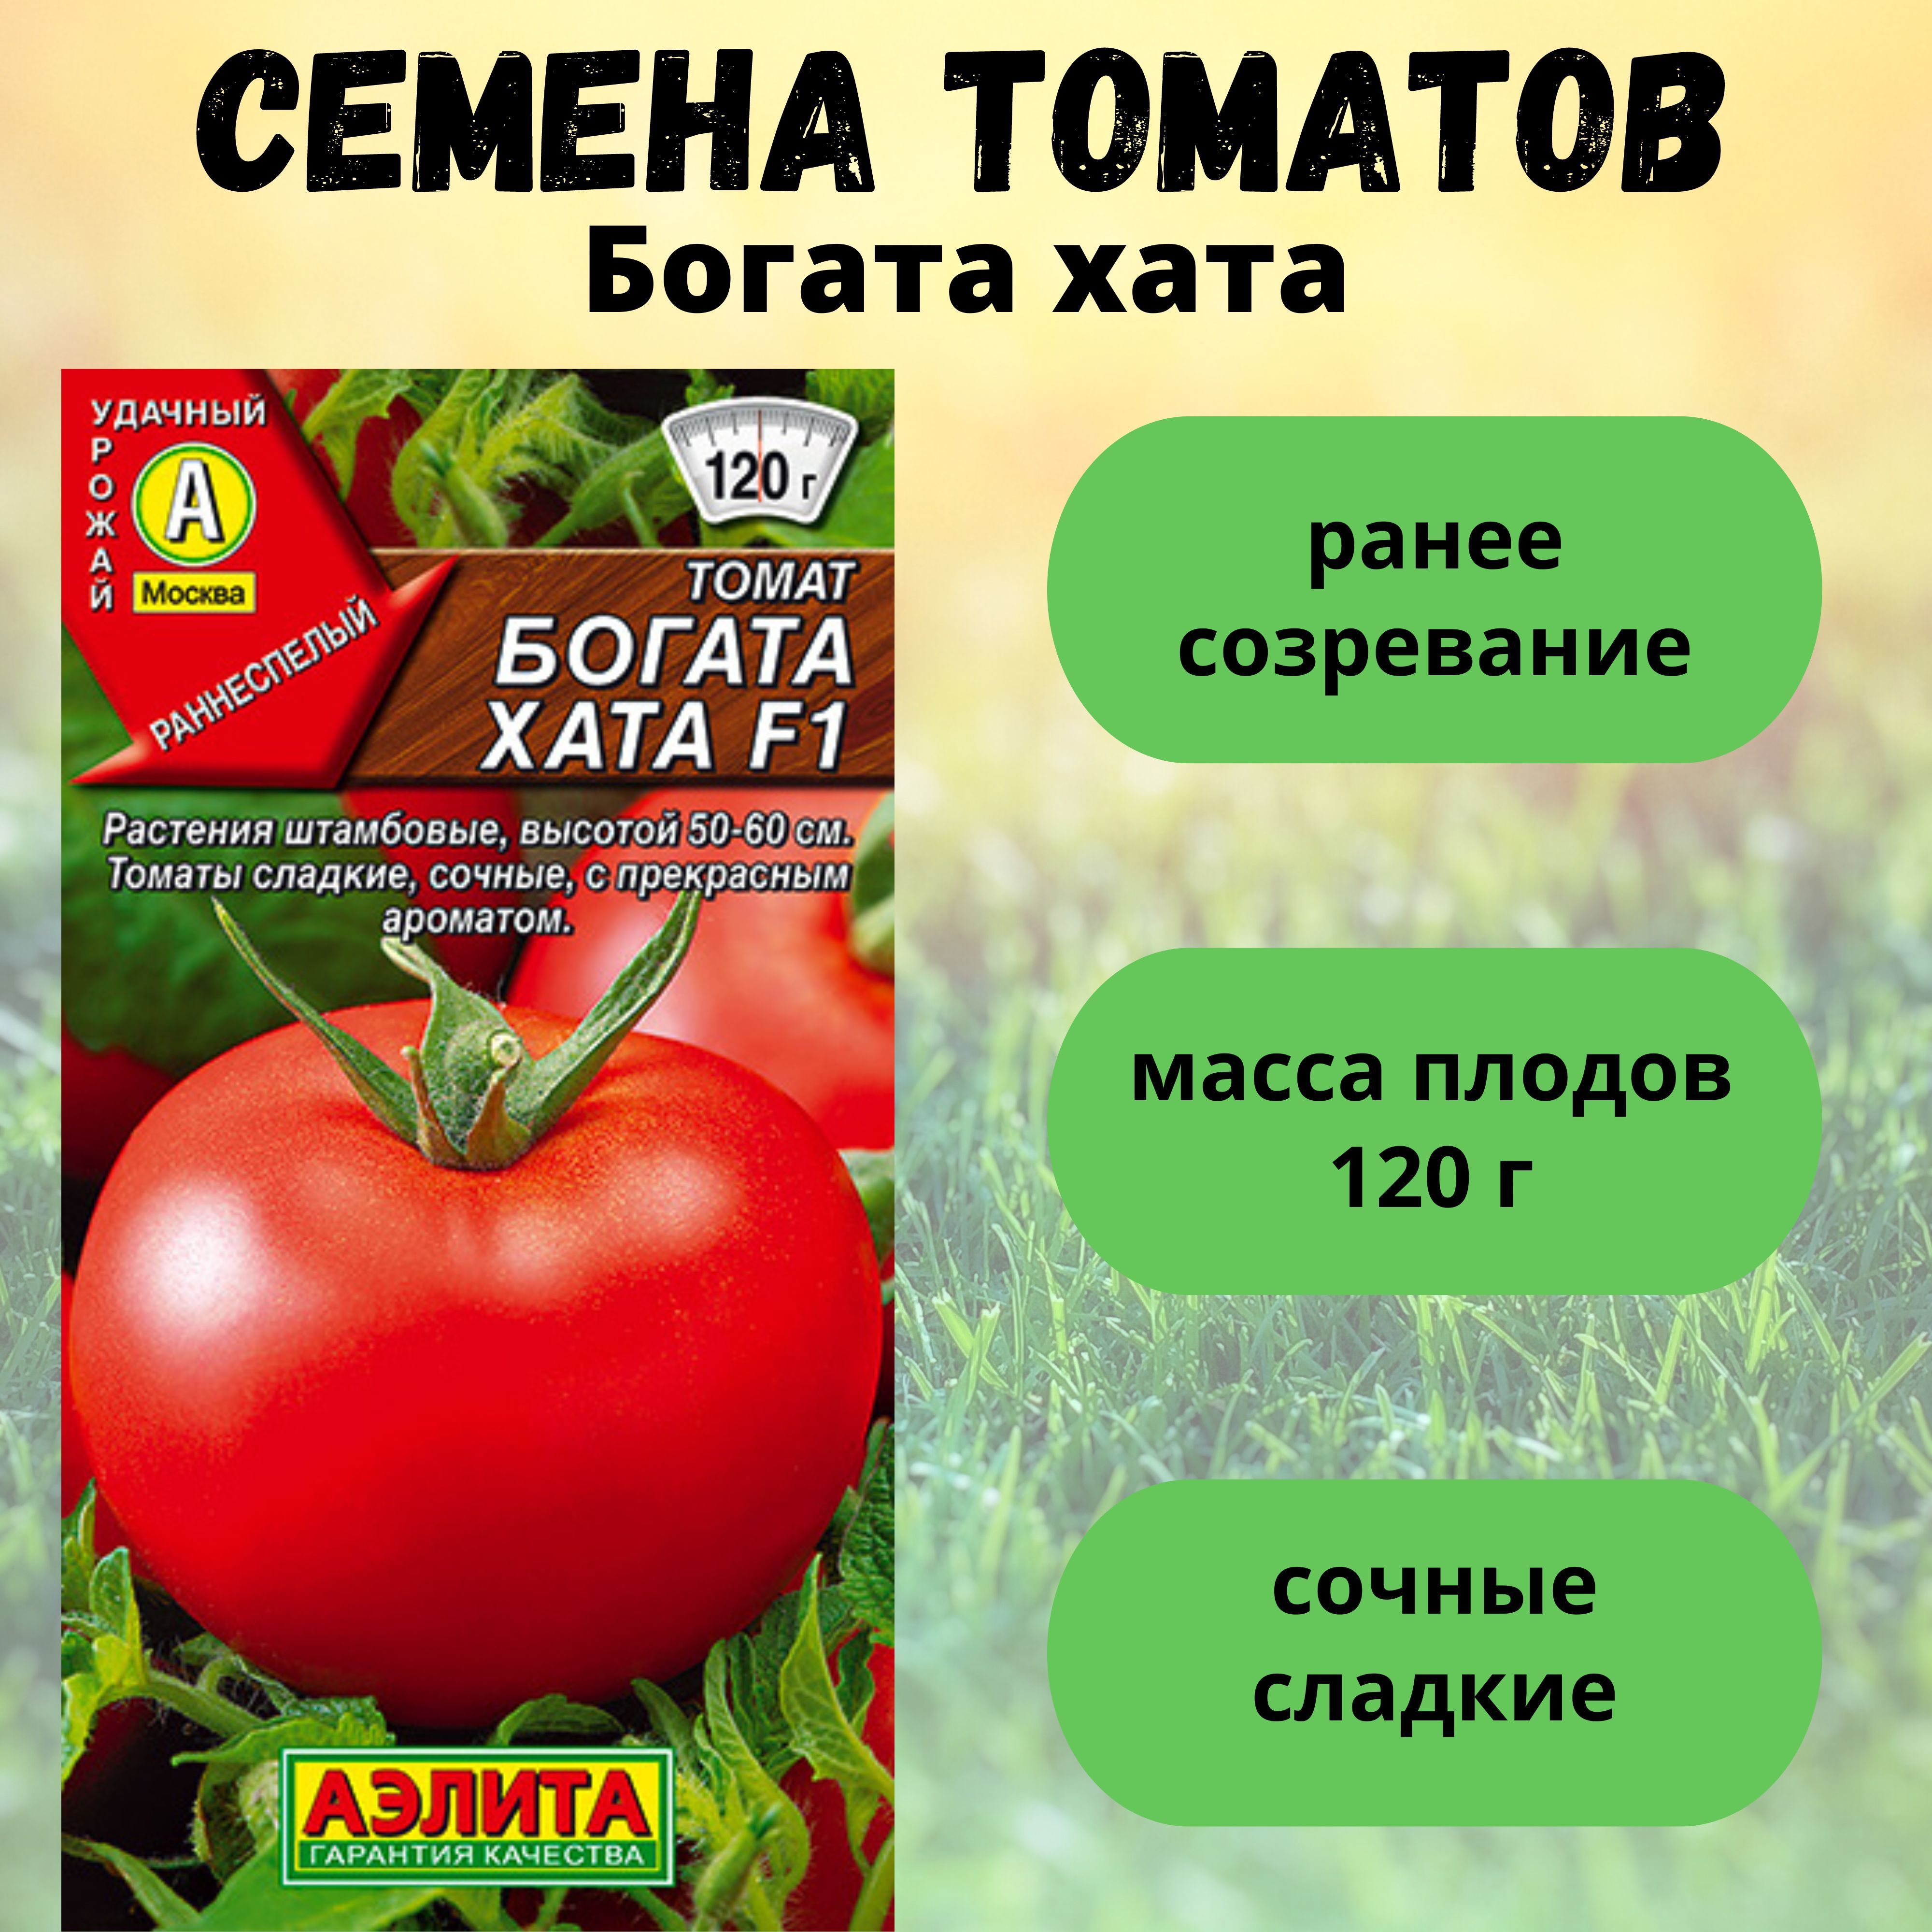 Томат богата хата описание и фото. Семена томатов богата хата.